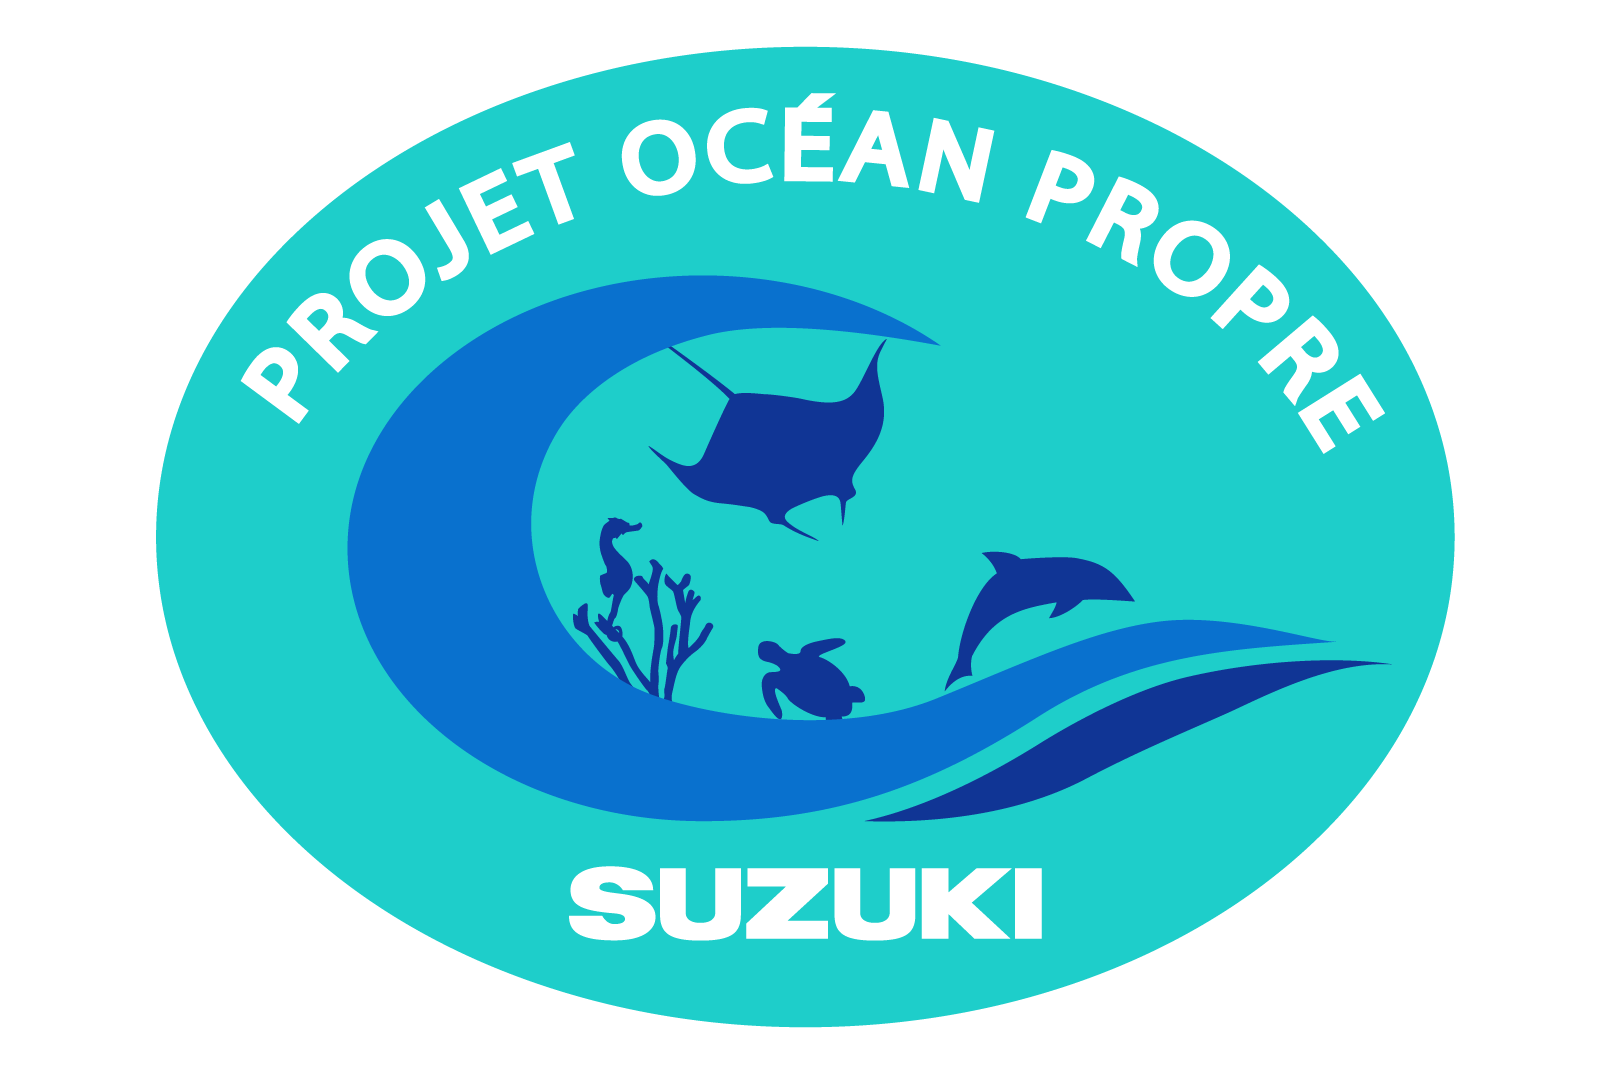 Clean ocean project suzuki